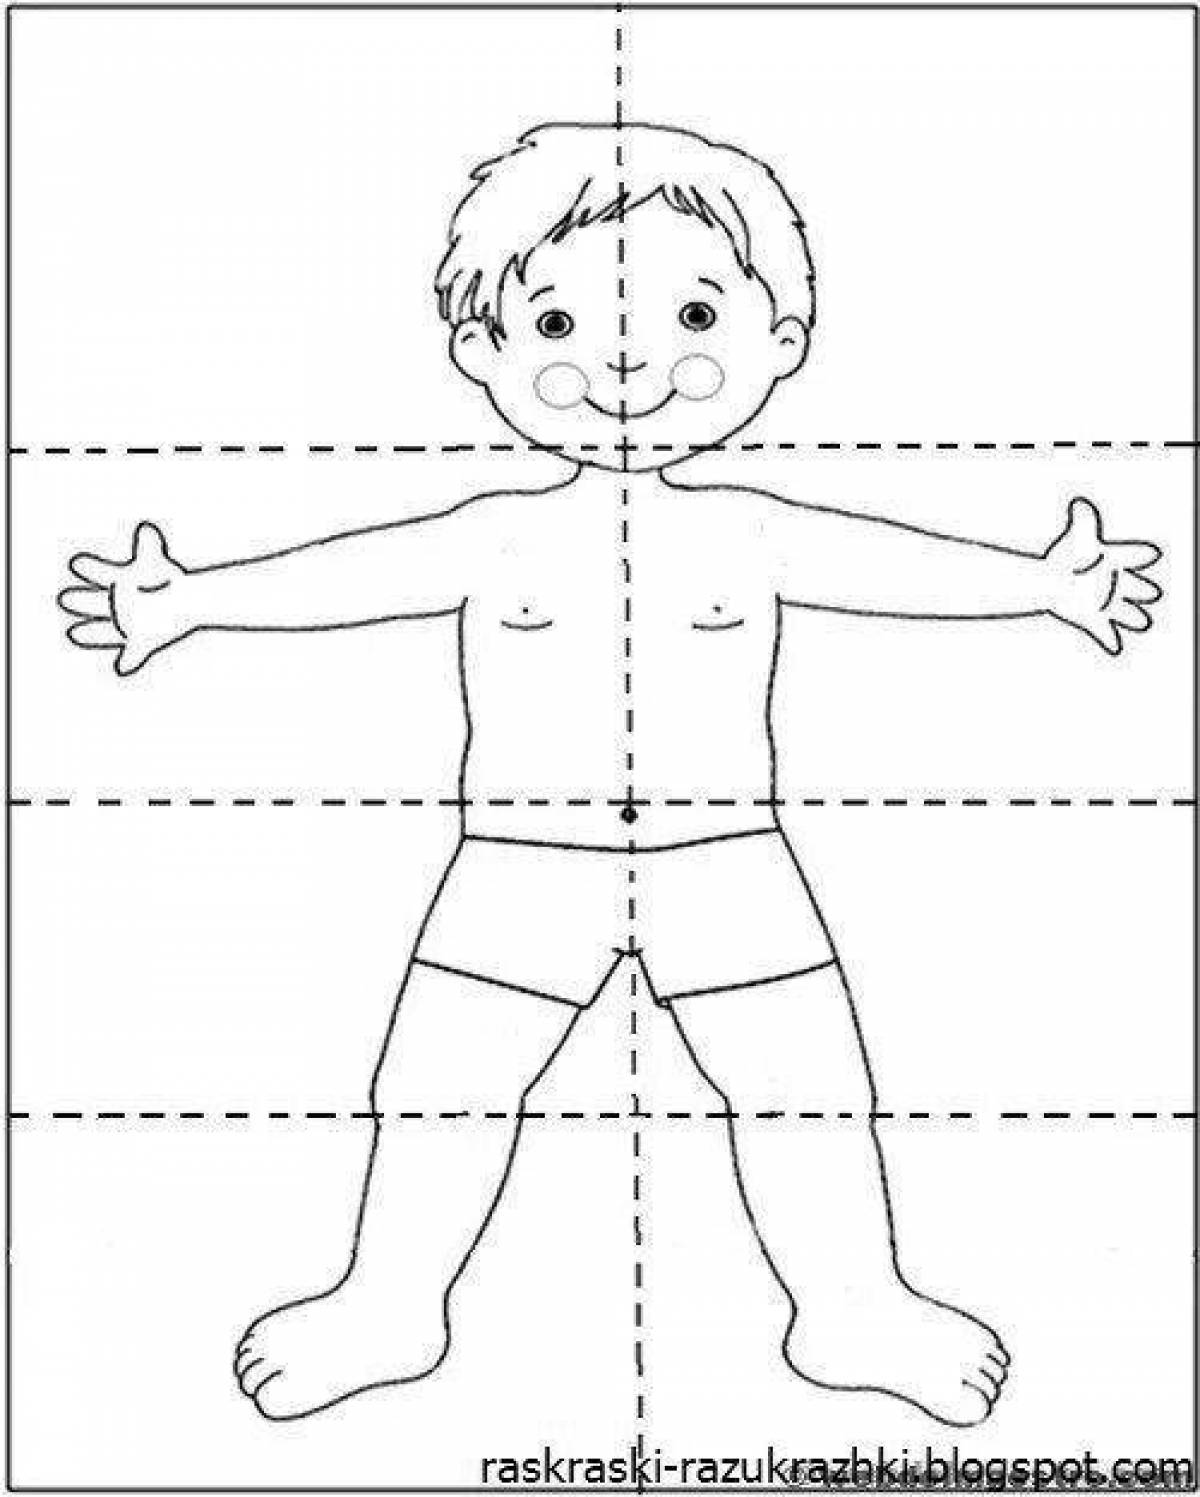 Части тела человека для детей